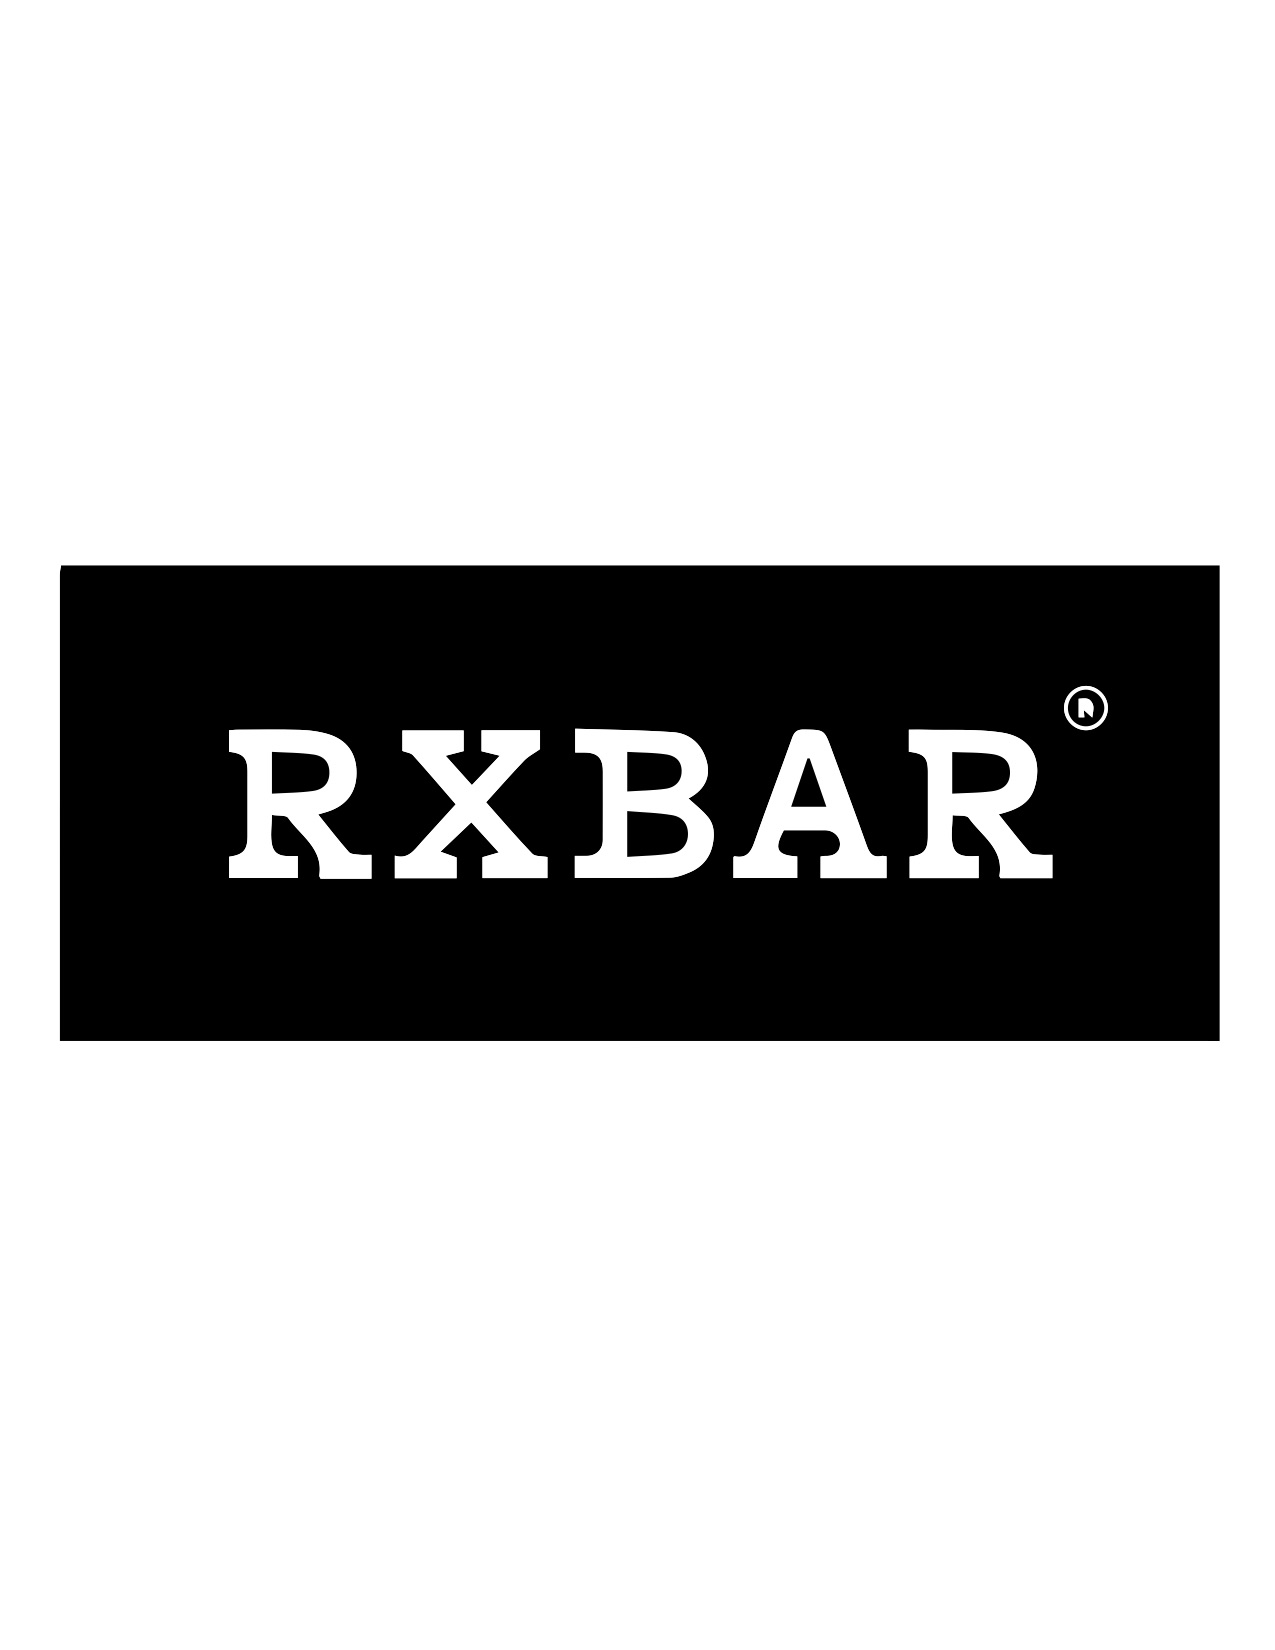 rxbar-logo-dark.jpg